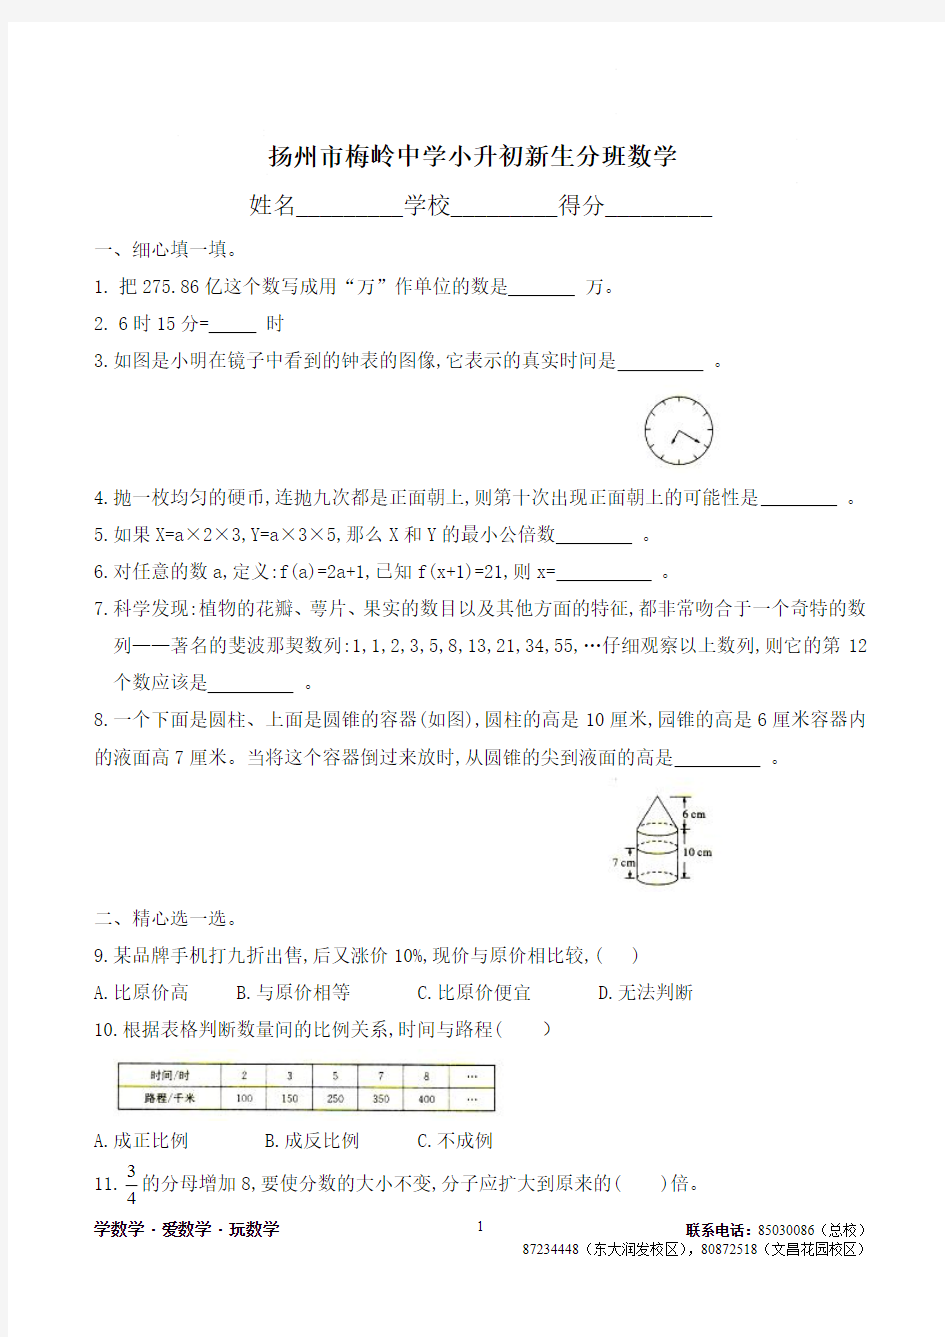 2020年扬州市梅岭中学小升初新生分班数学调查试卷及解析